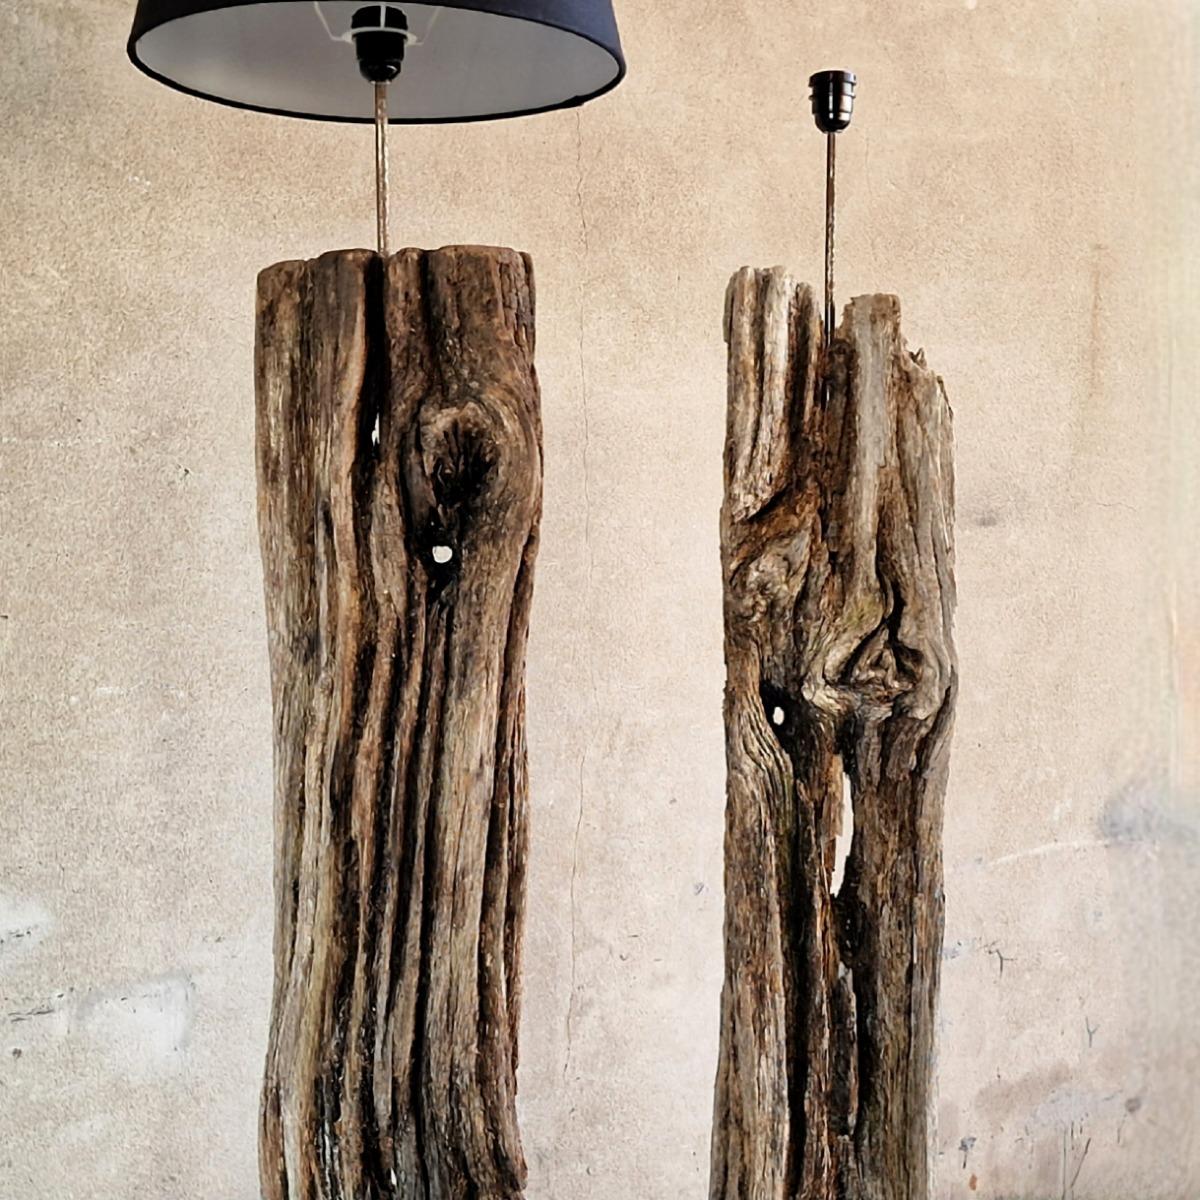 2 wooden floor lamps